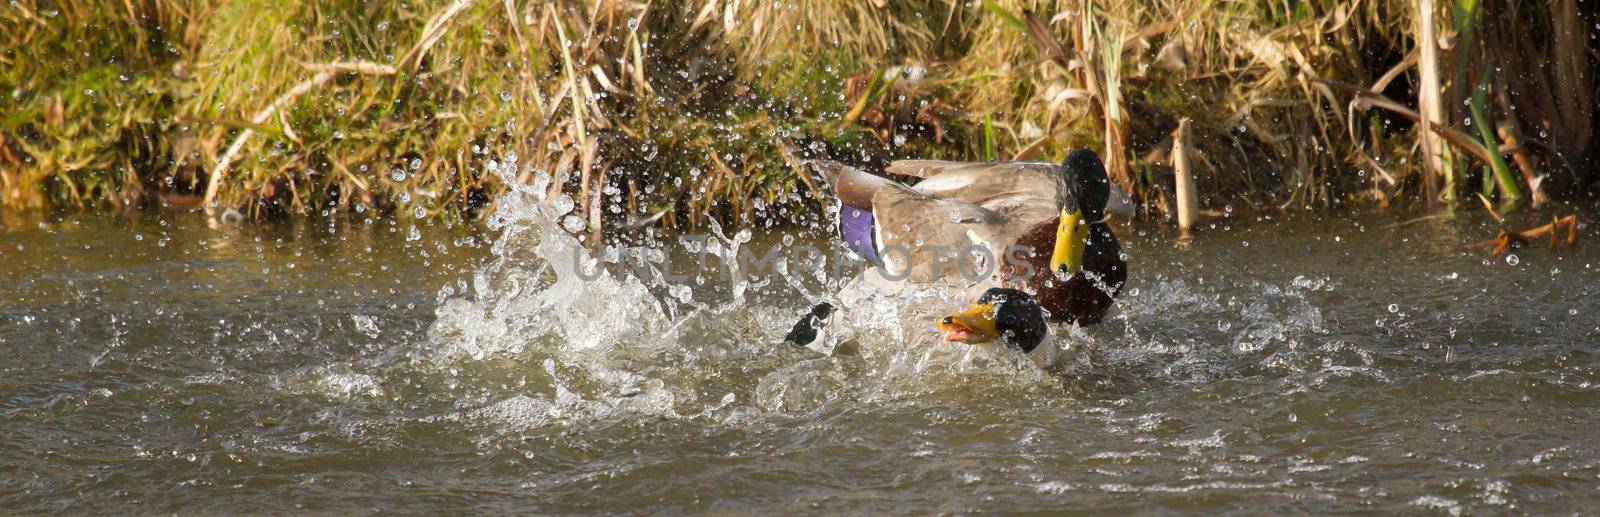 Fight between two wild ducks by michaklootwijk